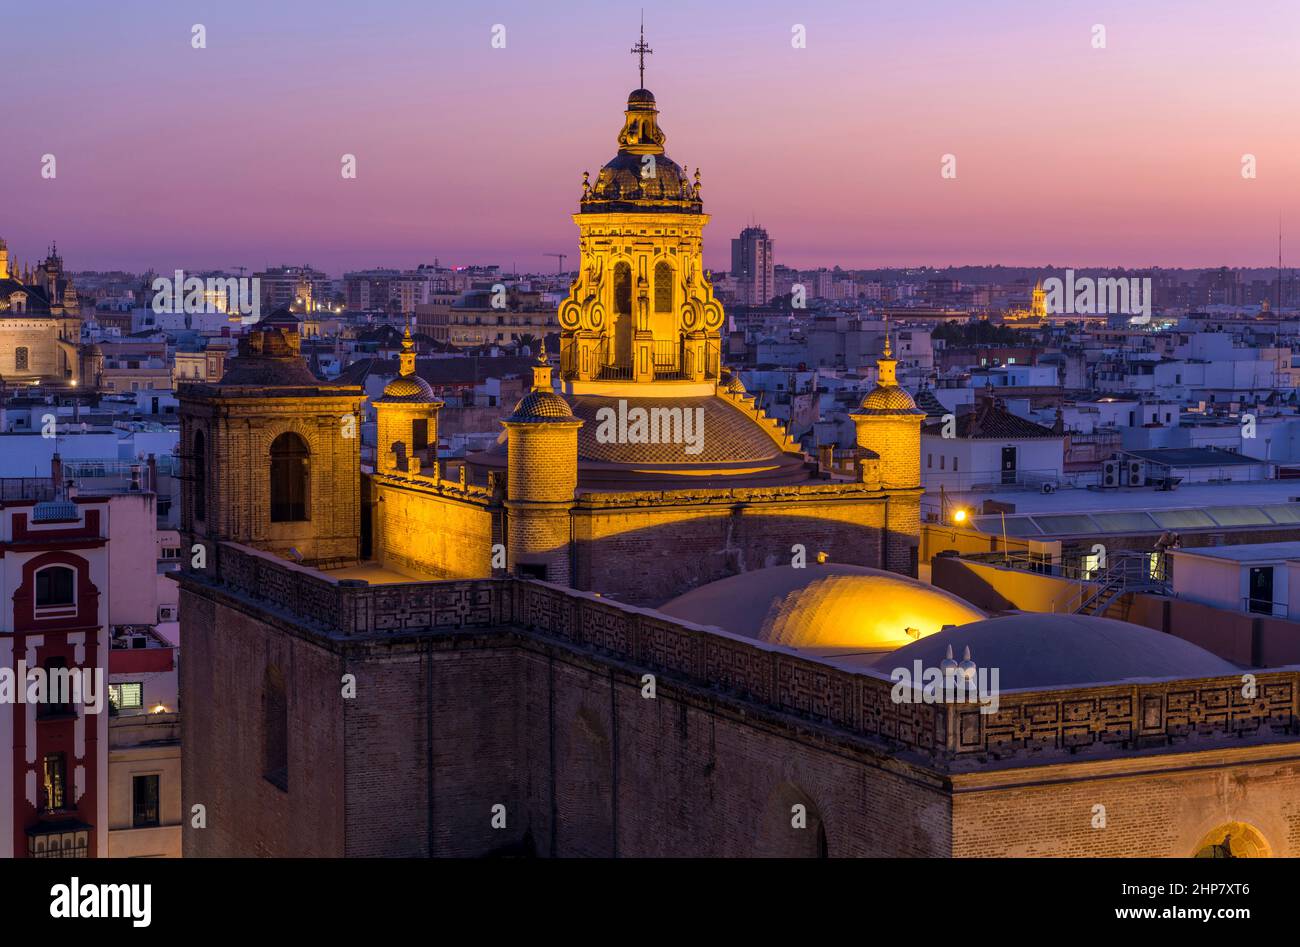 Golden Dome - Vue au crépuscule sur le dôme éclairé et le clocher au sommet de l'église de l'Annonciation de Séville, en Espagne, de style Renaissance datant de 16th ans. Banque D'Images